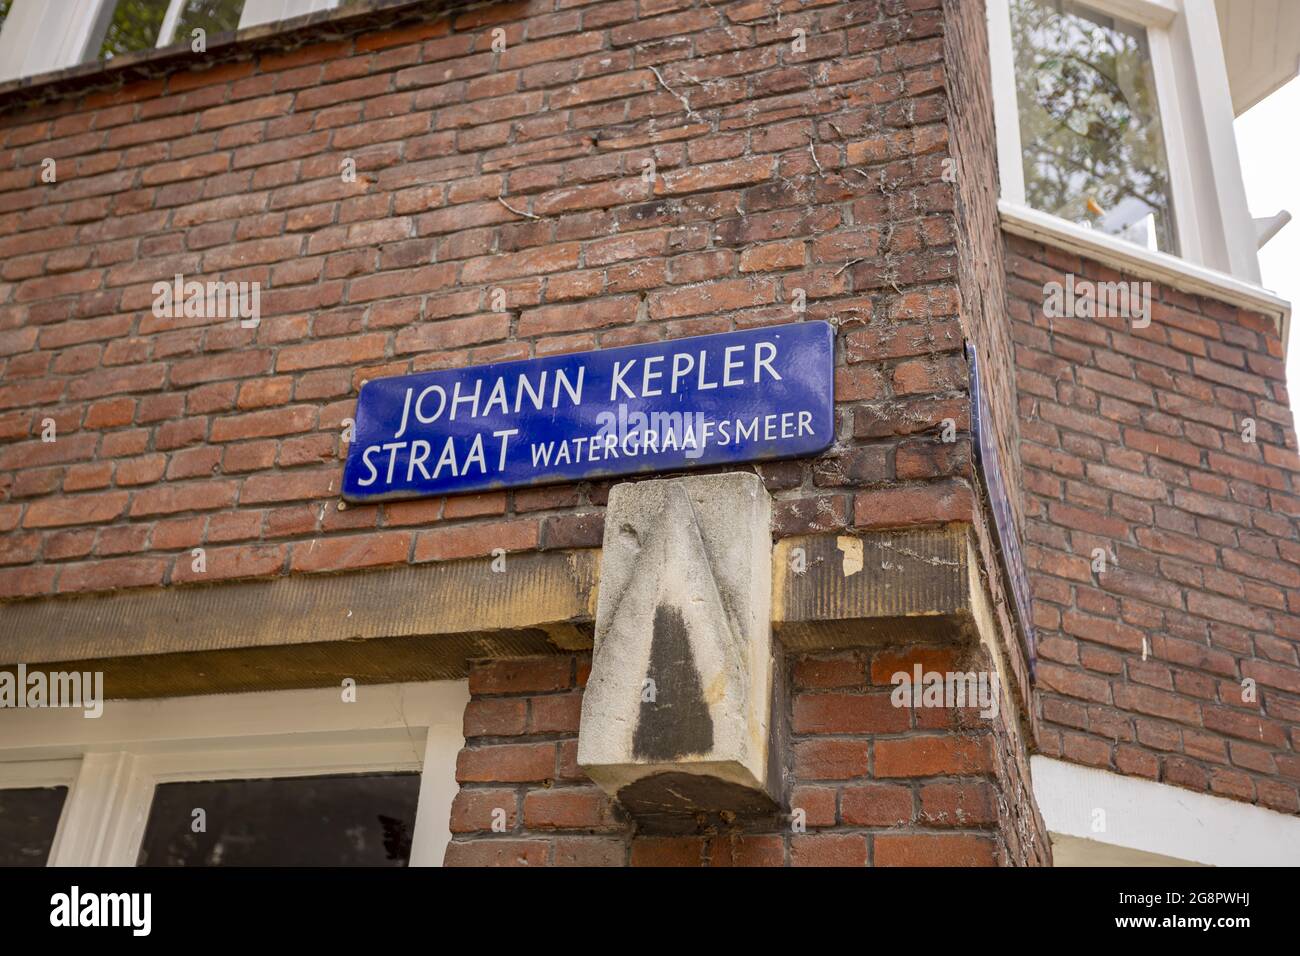 AMSTERDAM, PAESI BASSI - 26 giu 2021: Segno stradale dello stretto di Johan Kepler nella capitale olandese sulla facciata esterna in mattoni di una casa Foto Stock